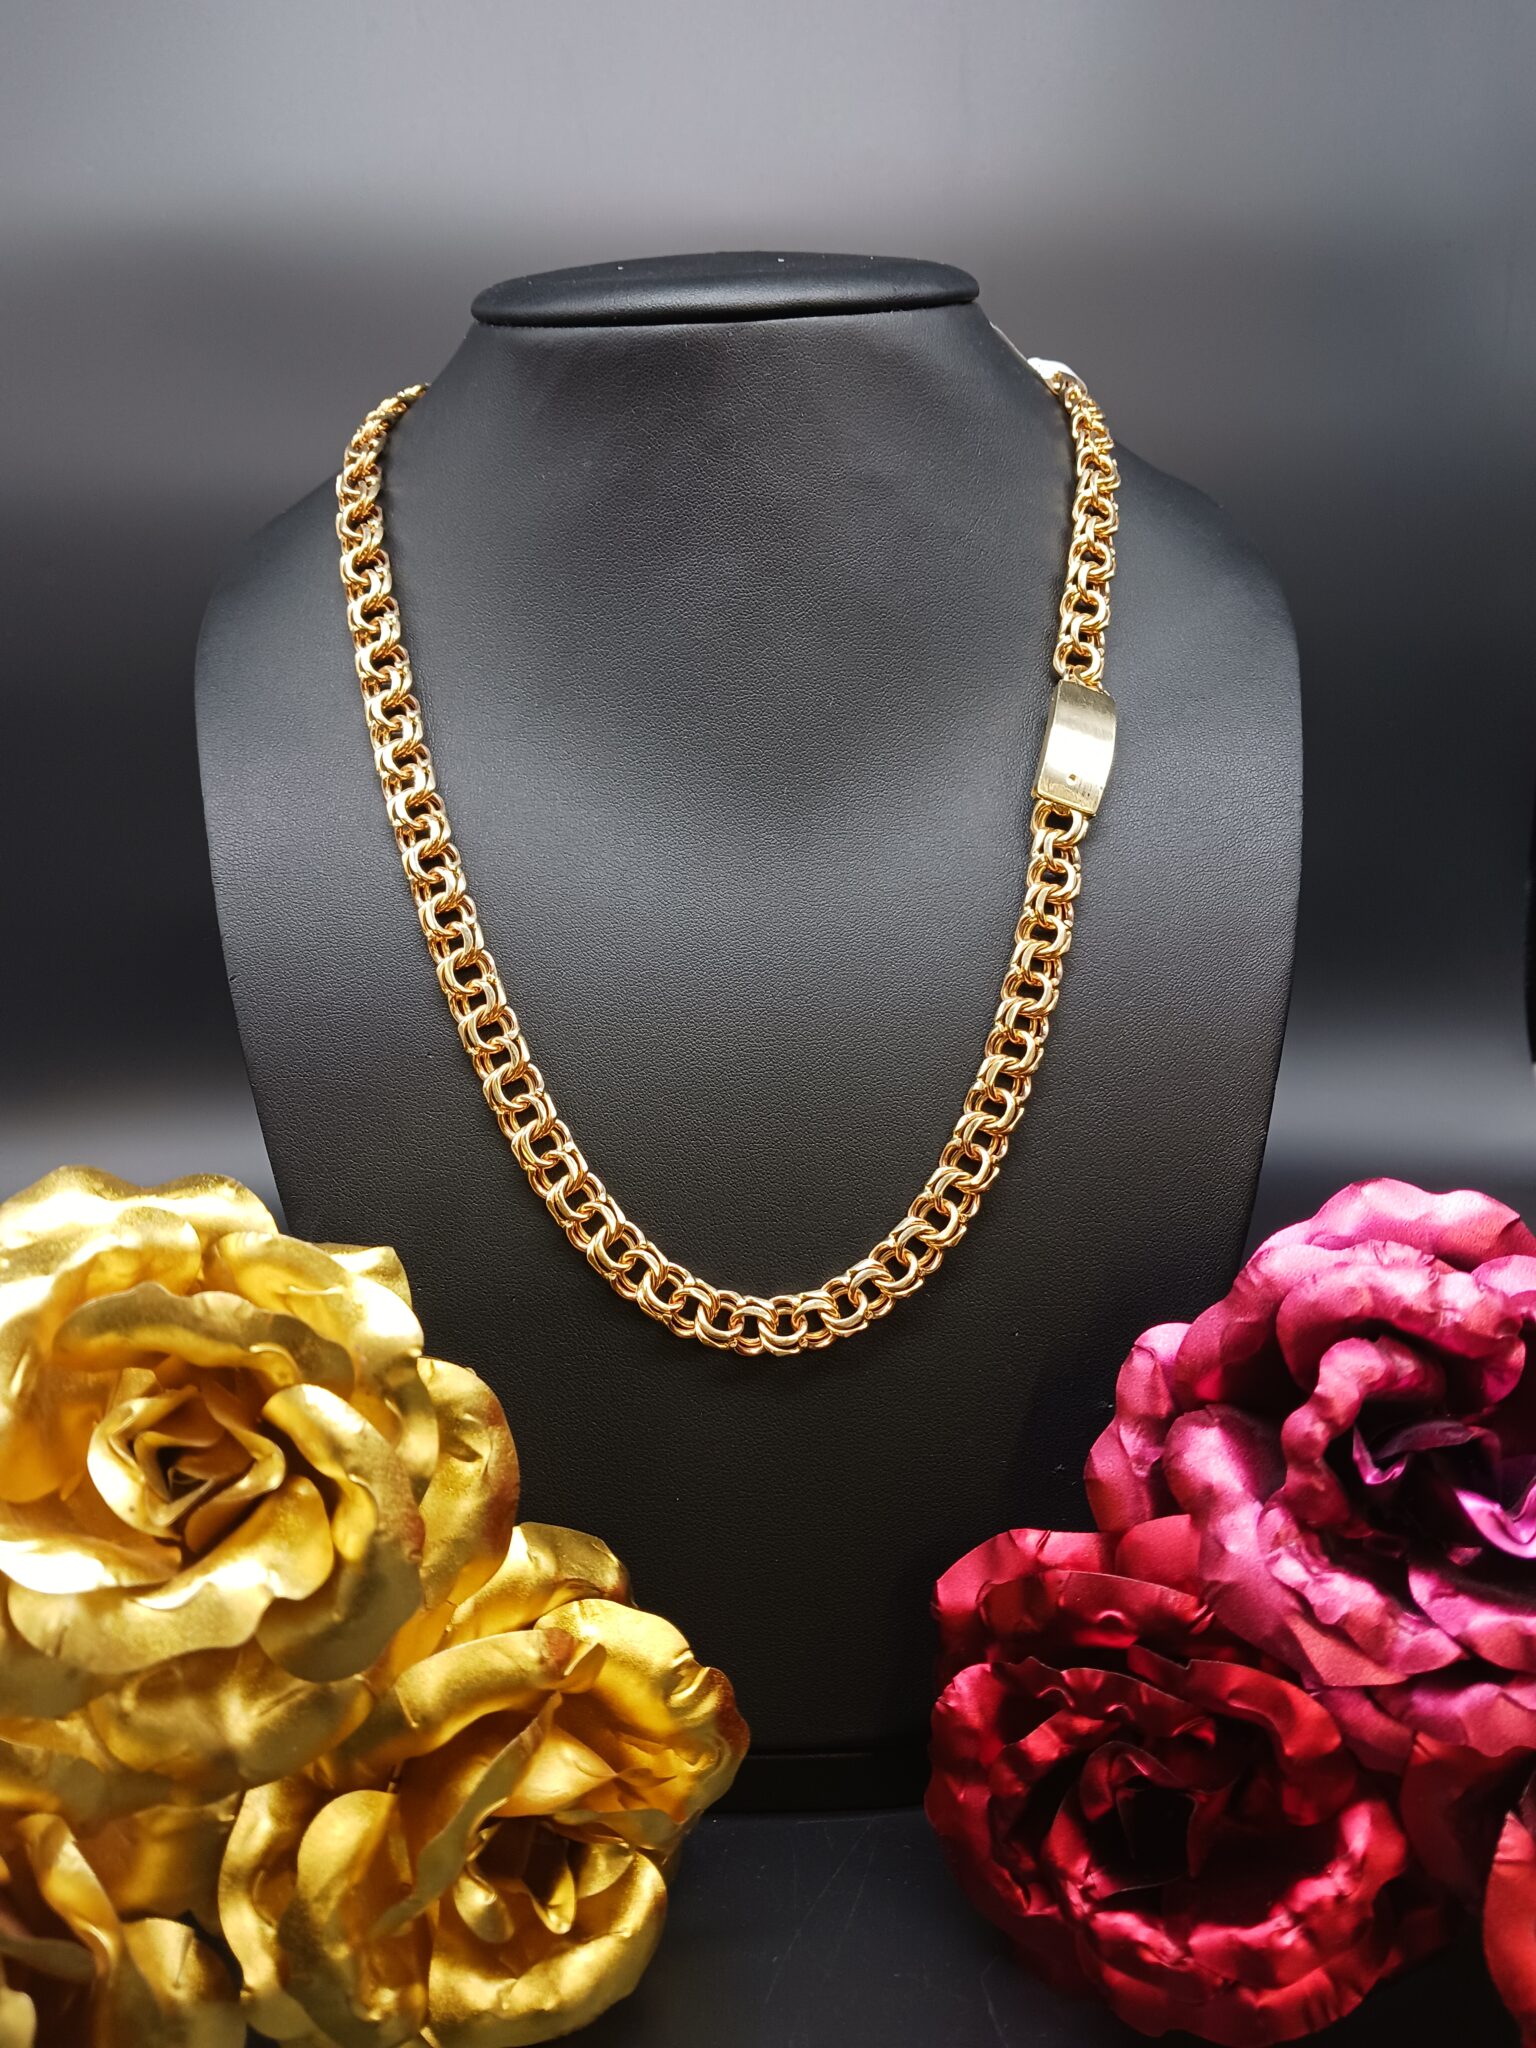 10k GOLD CHINO LINK CHAIN - Tamayo's Jewelry